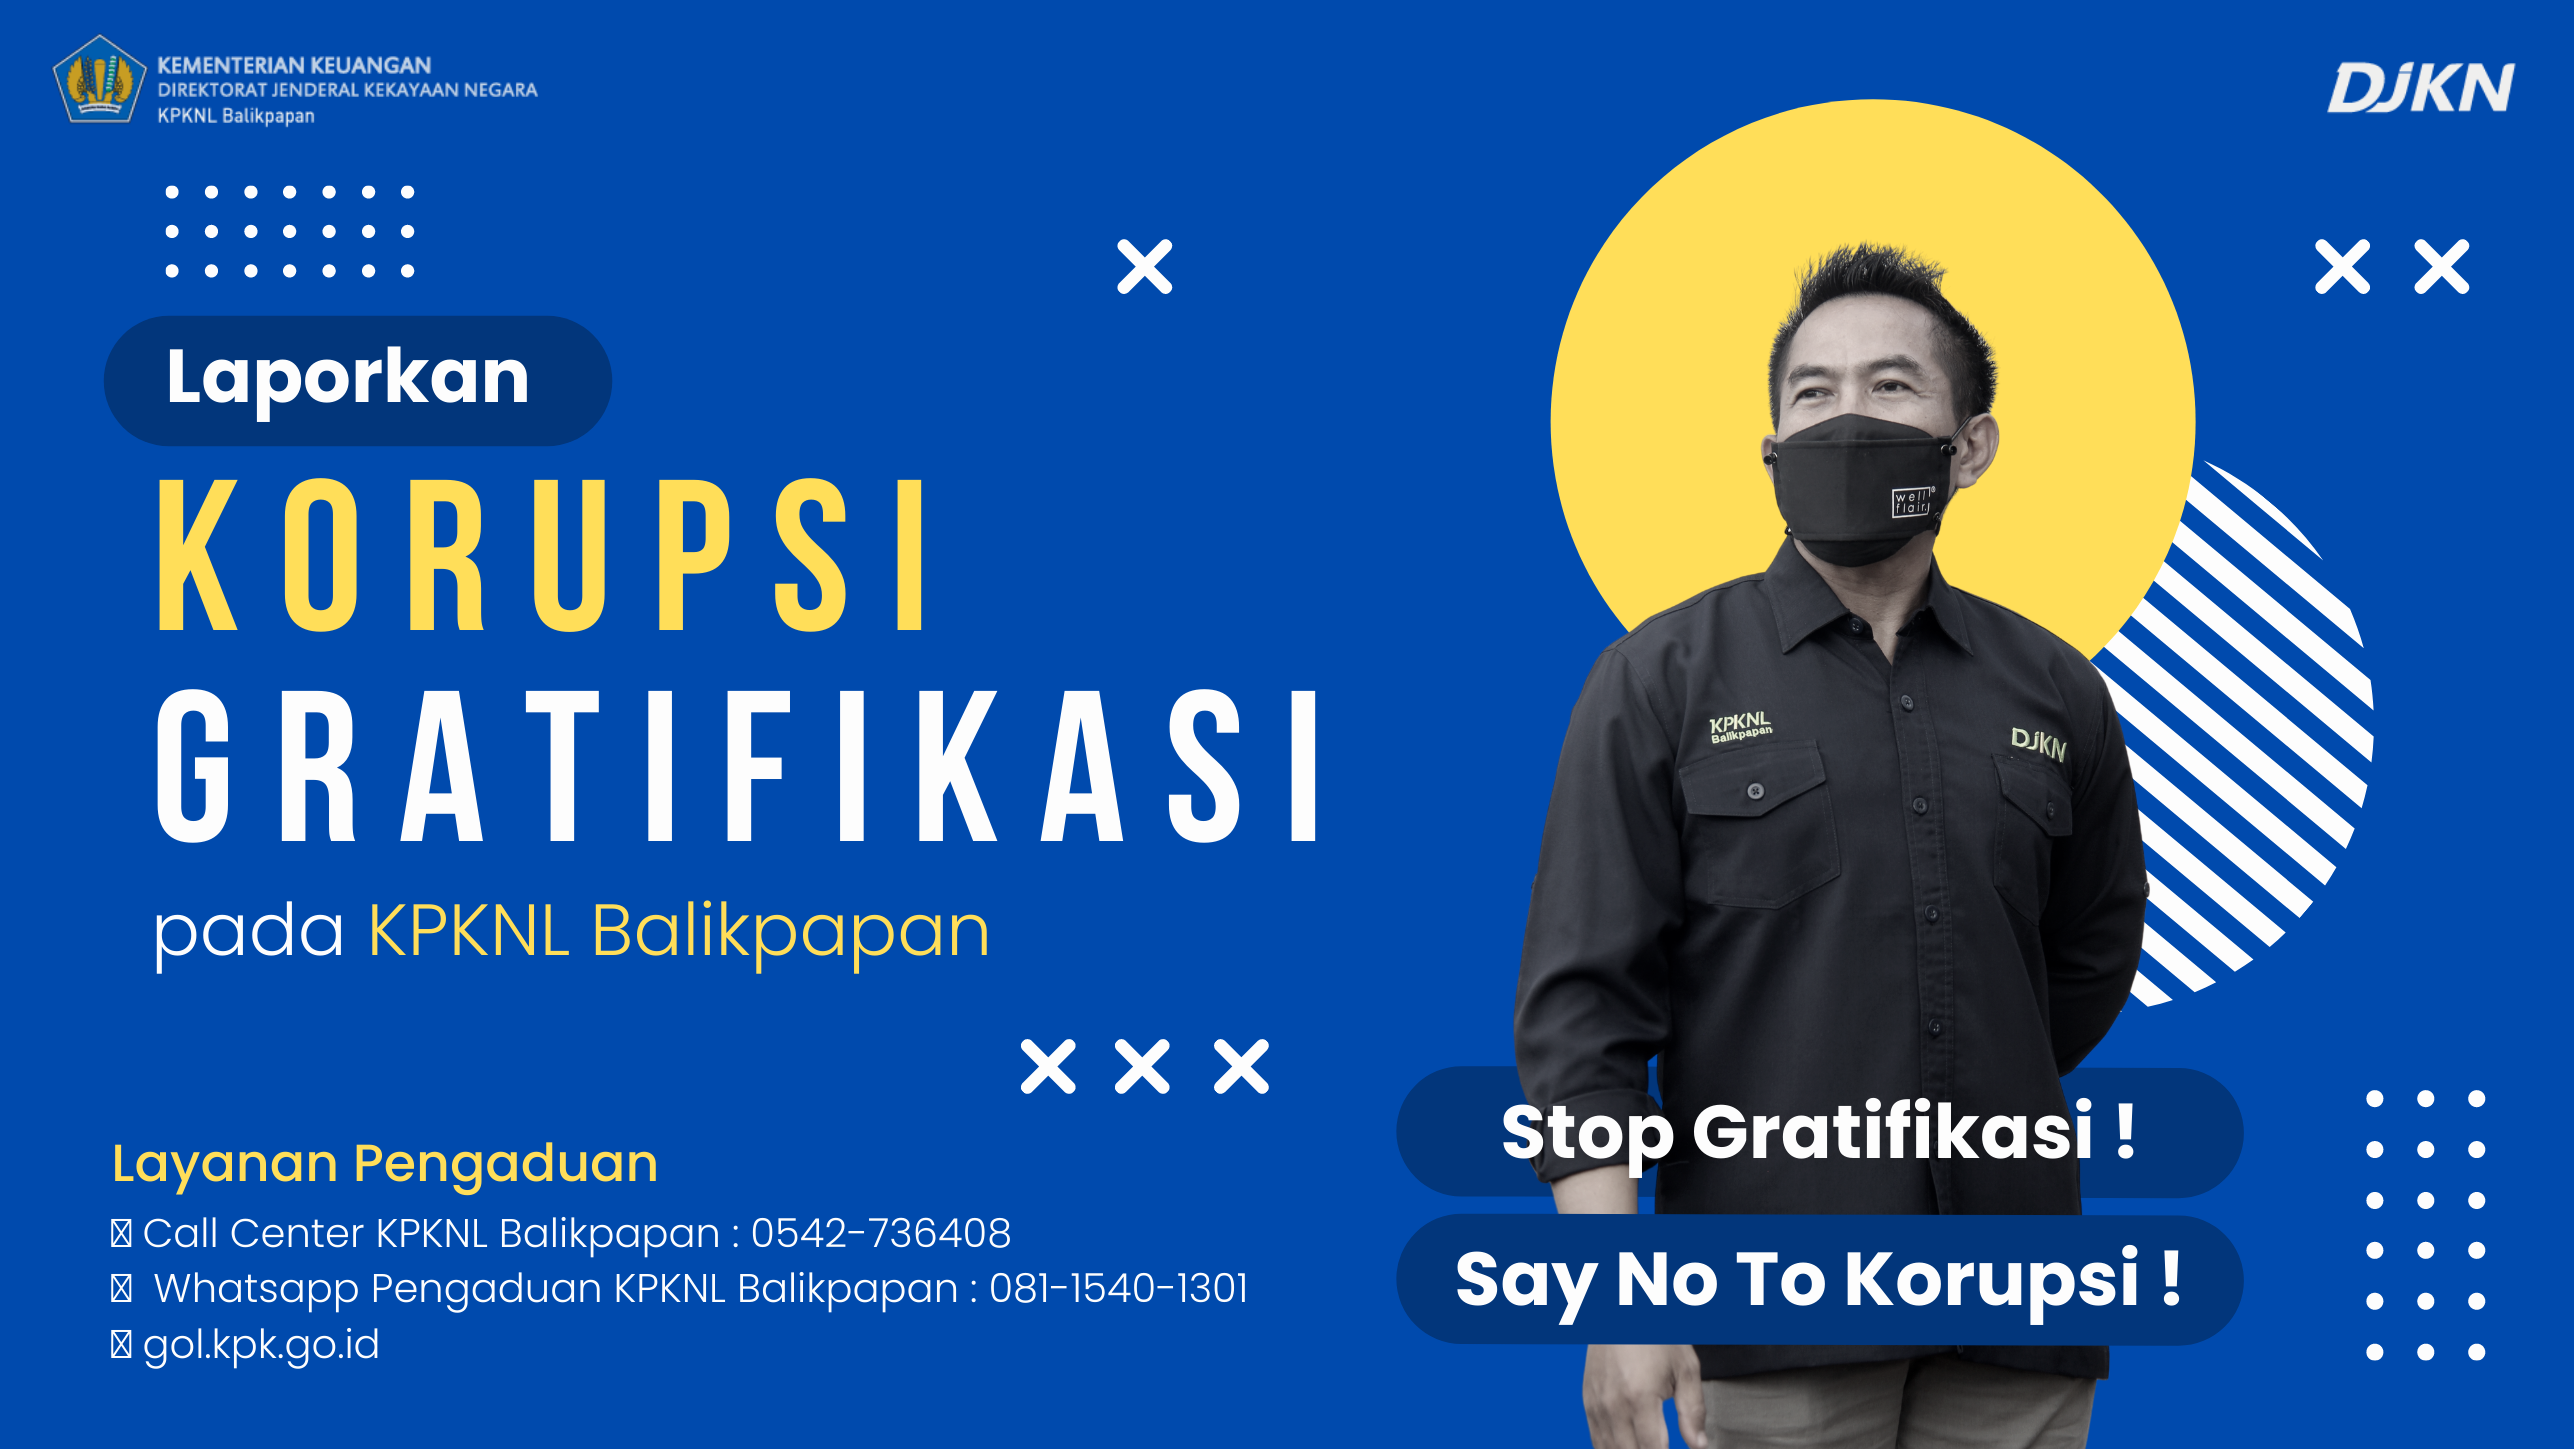 Stop Gratifikasi, Say No To Korupsi !